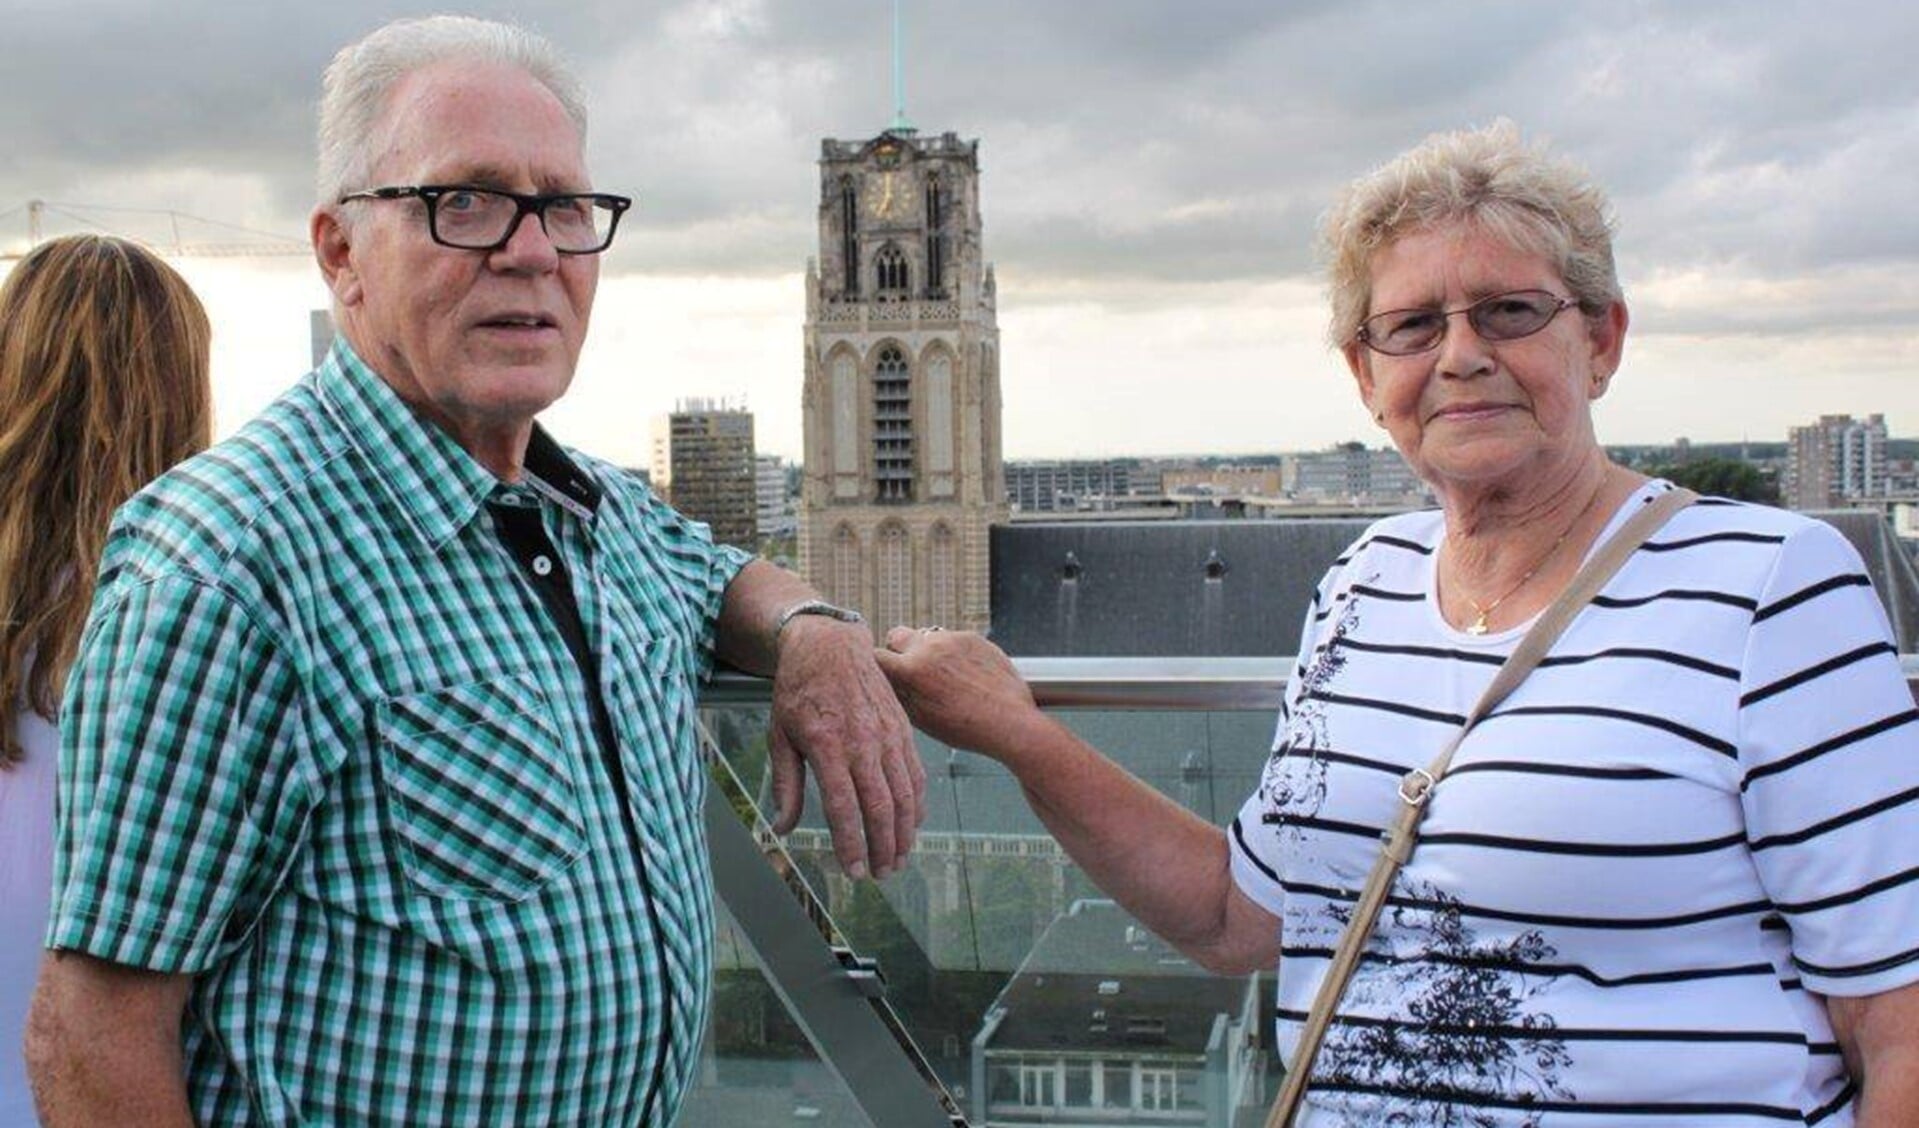 Bert en Ina poseren op het dak van de Markthal in Rotterdam. Ina heeft haar trouwring om, maar Bert al 55 niet meer.